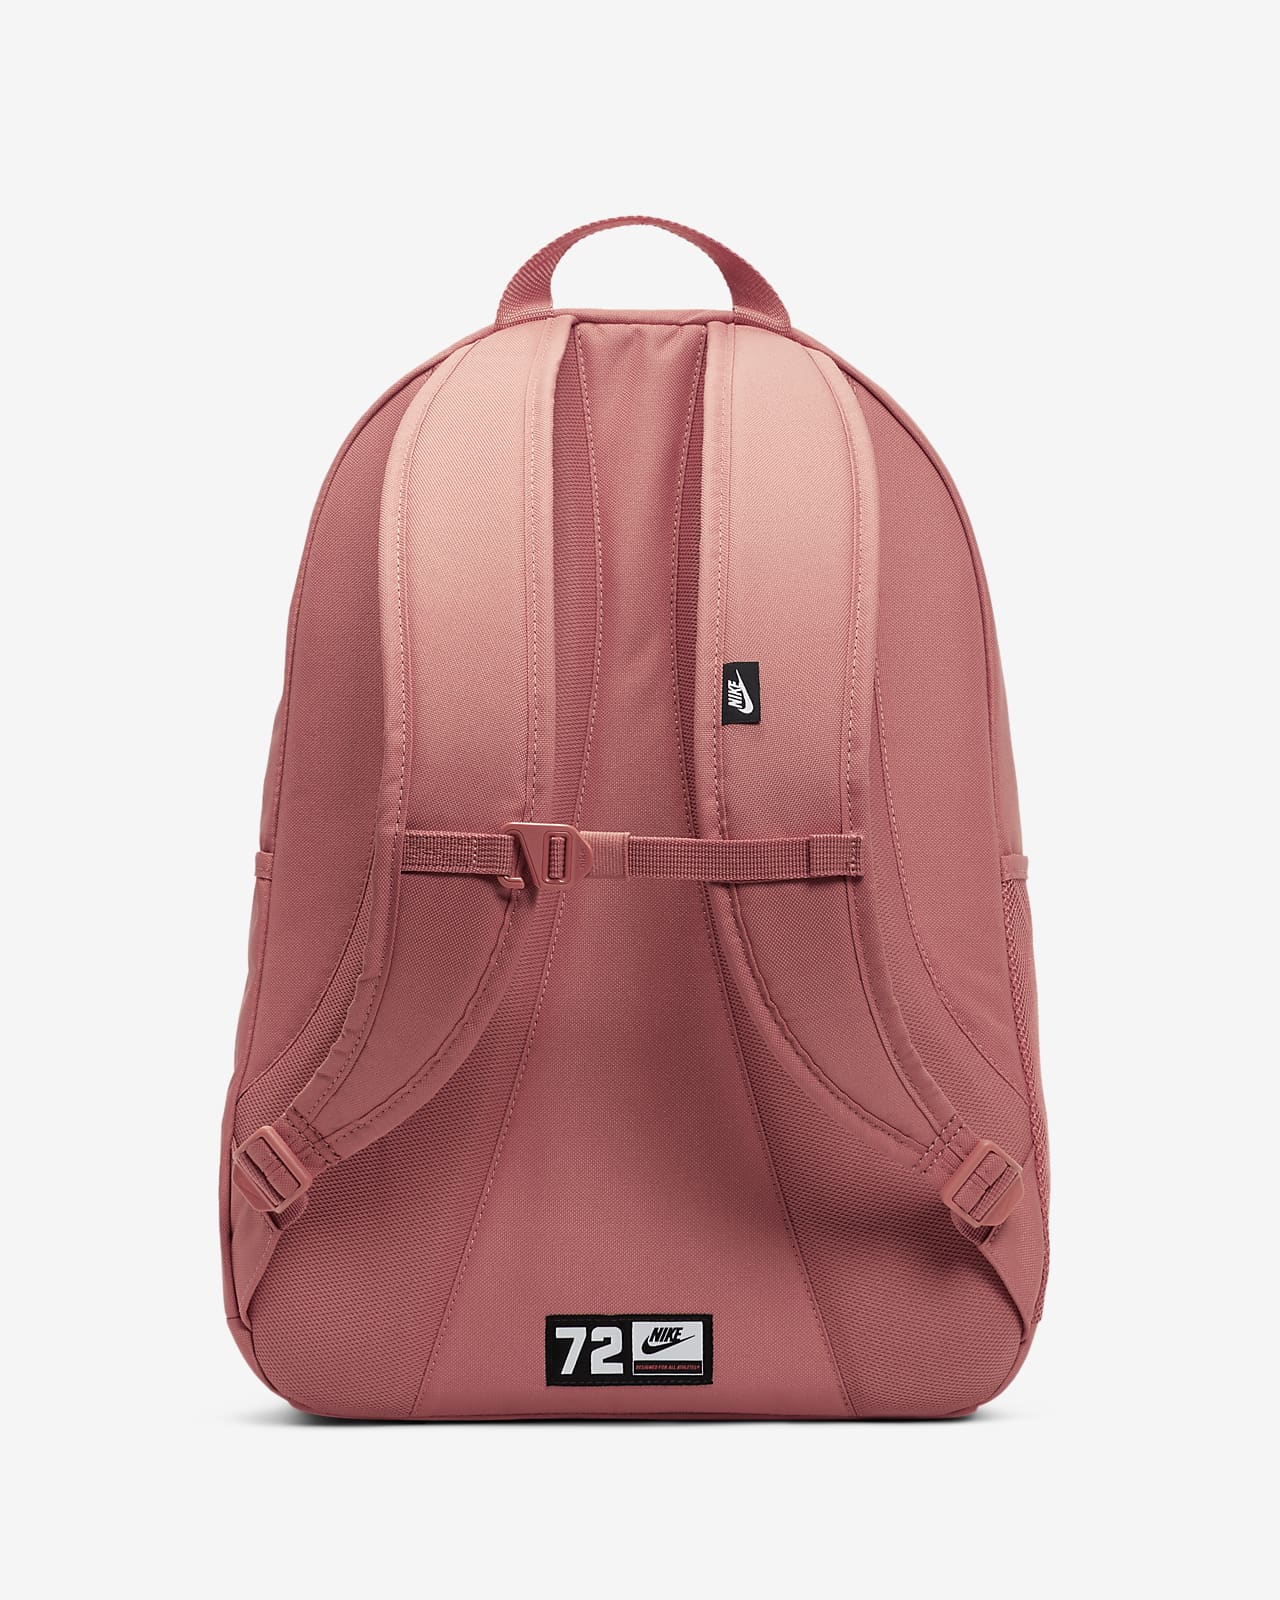 nike hayward backpack pink